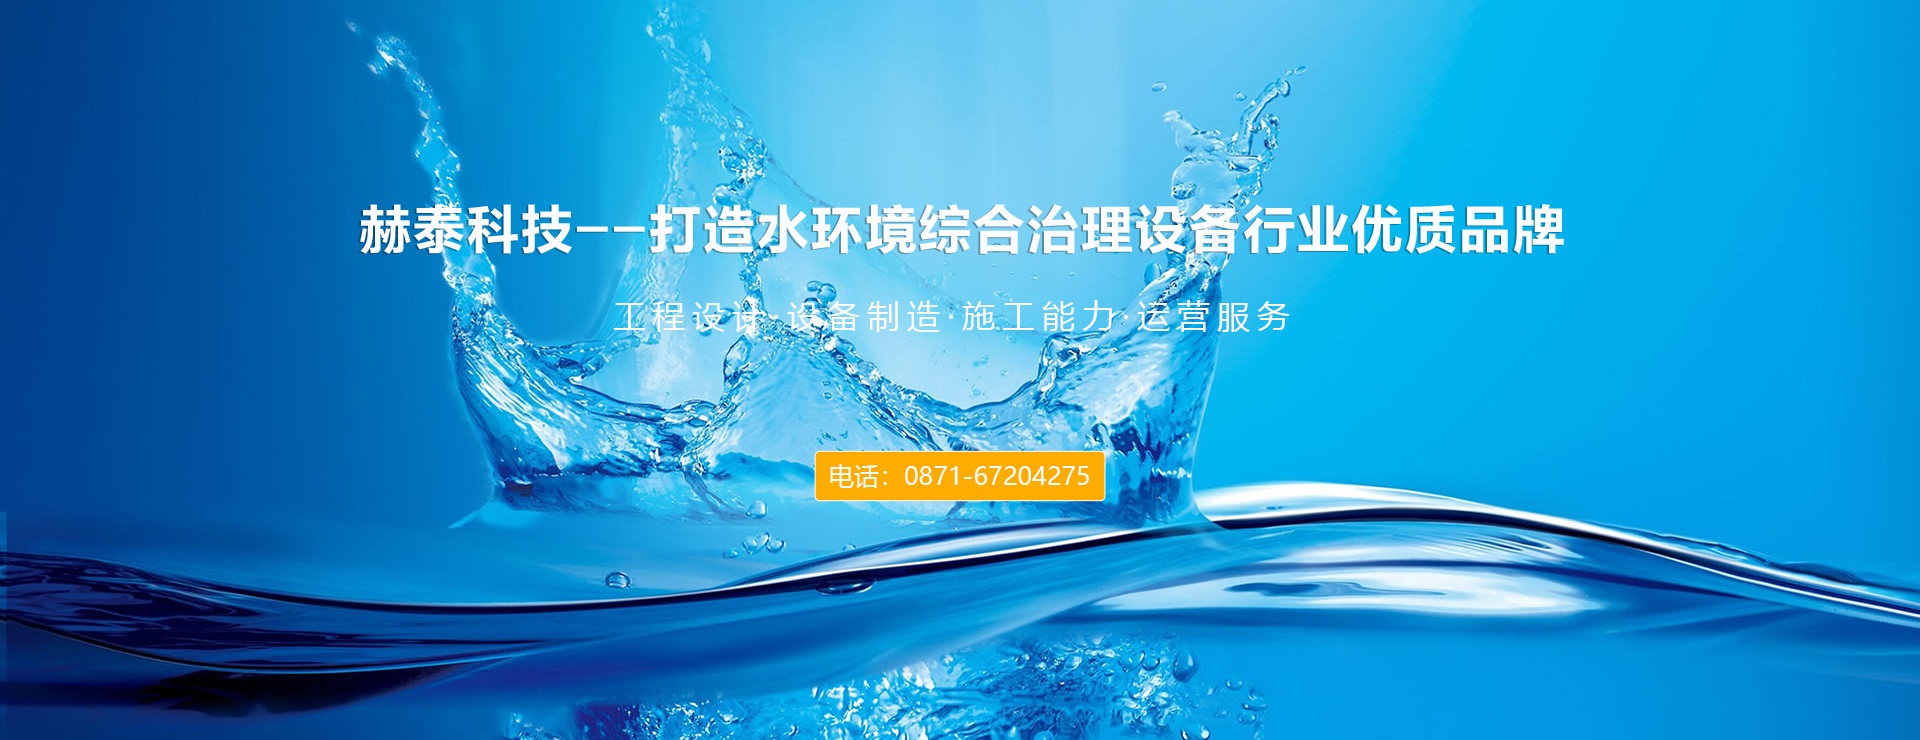 赫泰科技-水环境综合治理设备